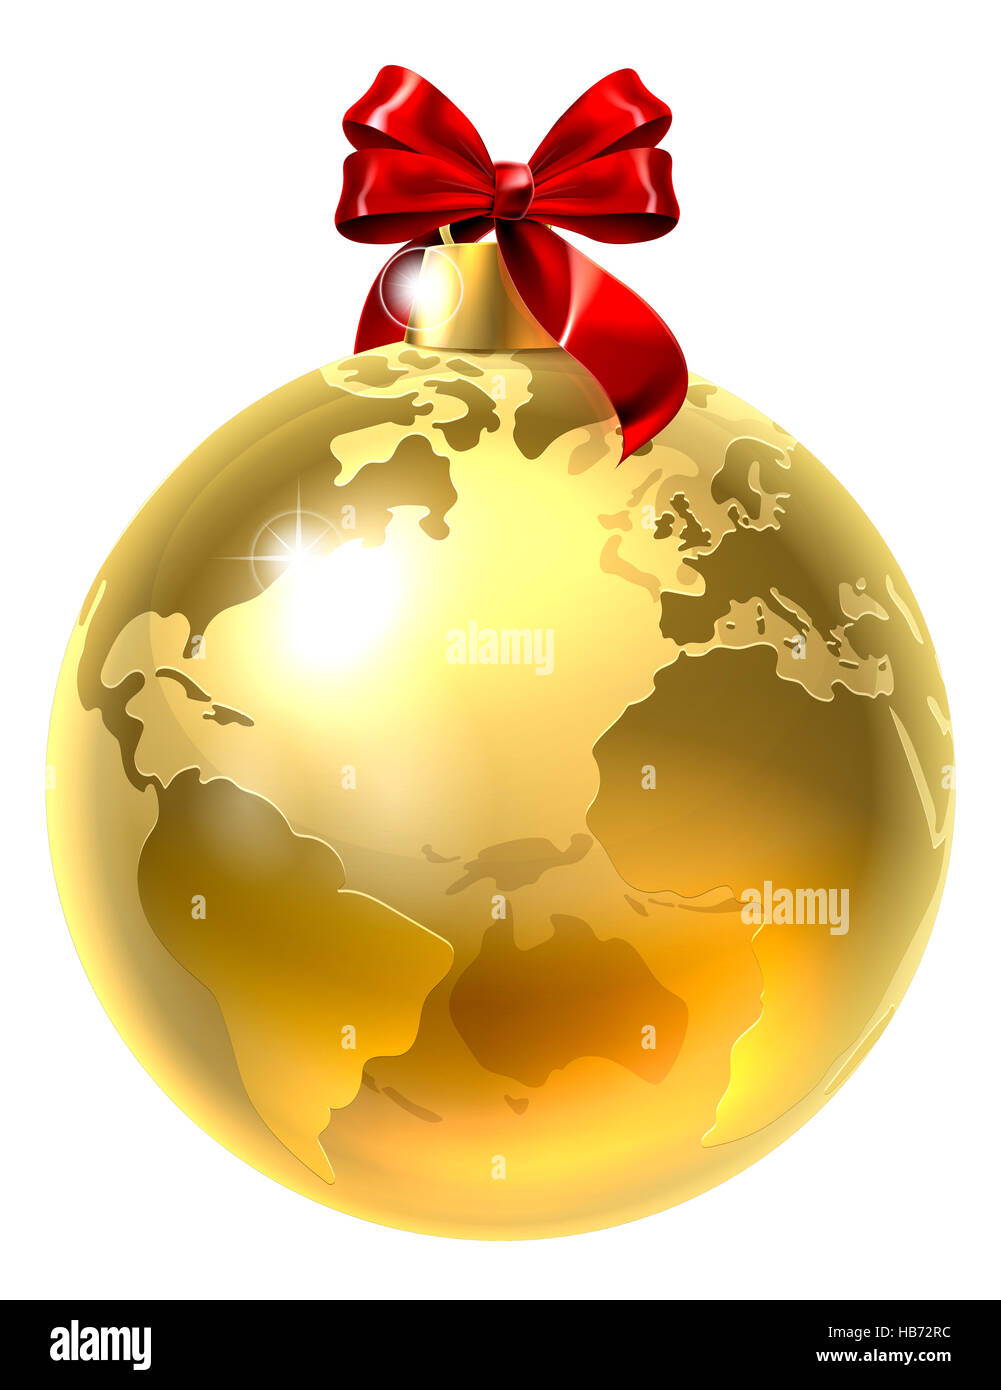 Ein Beispiel für ein gold Globe Welt Erde Baum Christbaumkugel Dekoration Christbaumkugel mit einer roten Schleife Stockfoto